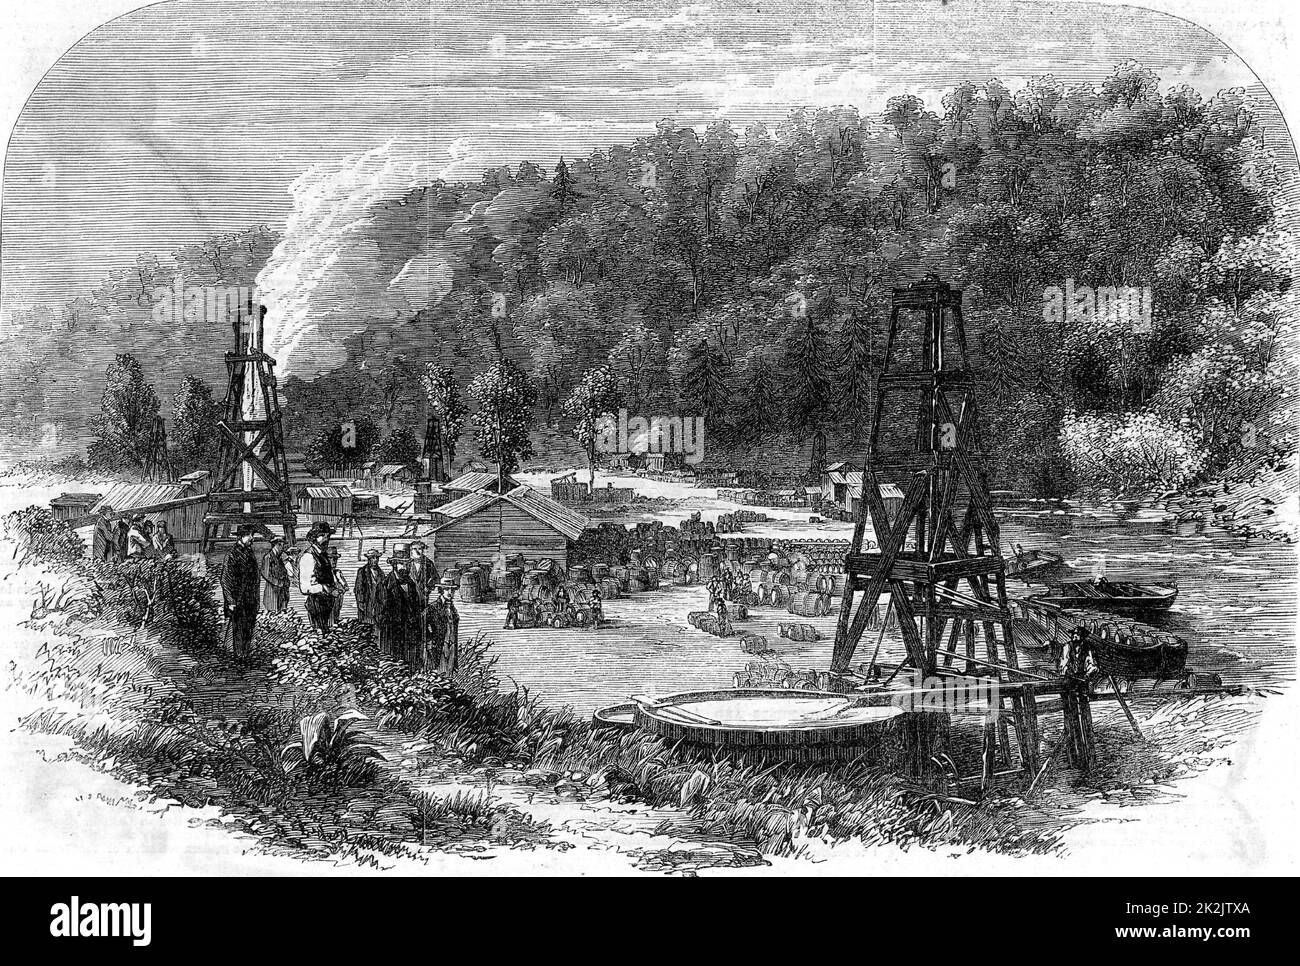 Sources d'huile à Tarr Farm, Oil Creek, Venango County, Pennsylvanie, états-unis. Gravure de 'The Illustrated London News' (Londres, 8 novembre 1862). Carburant. Hydrocarbure. Banque D'Images